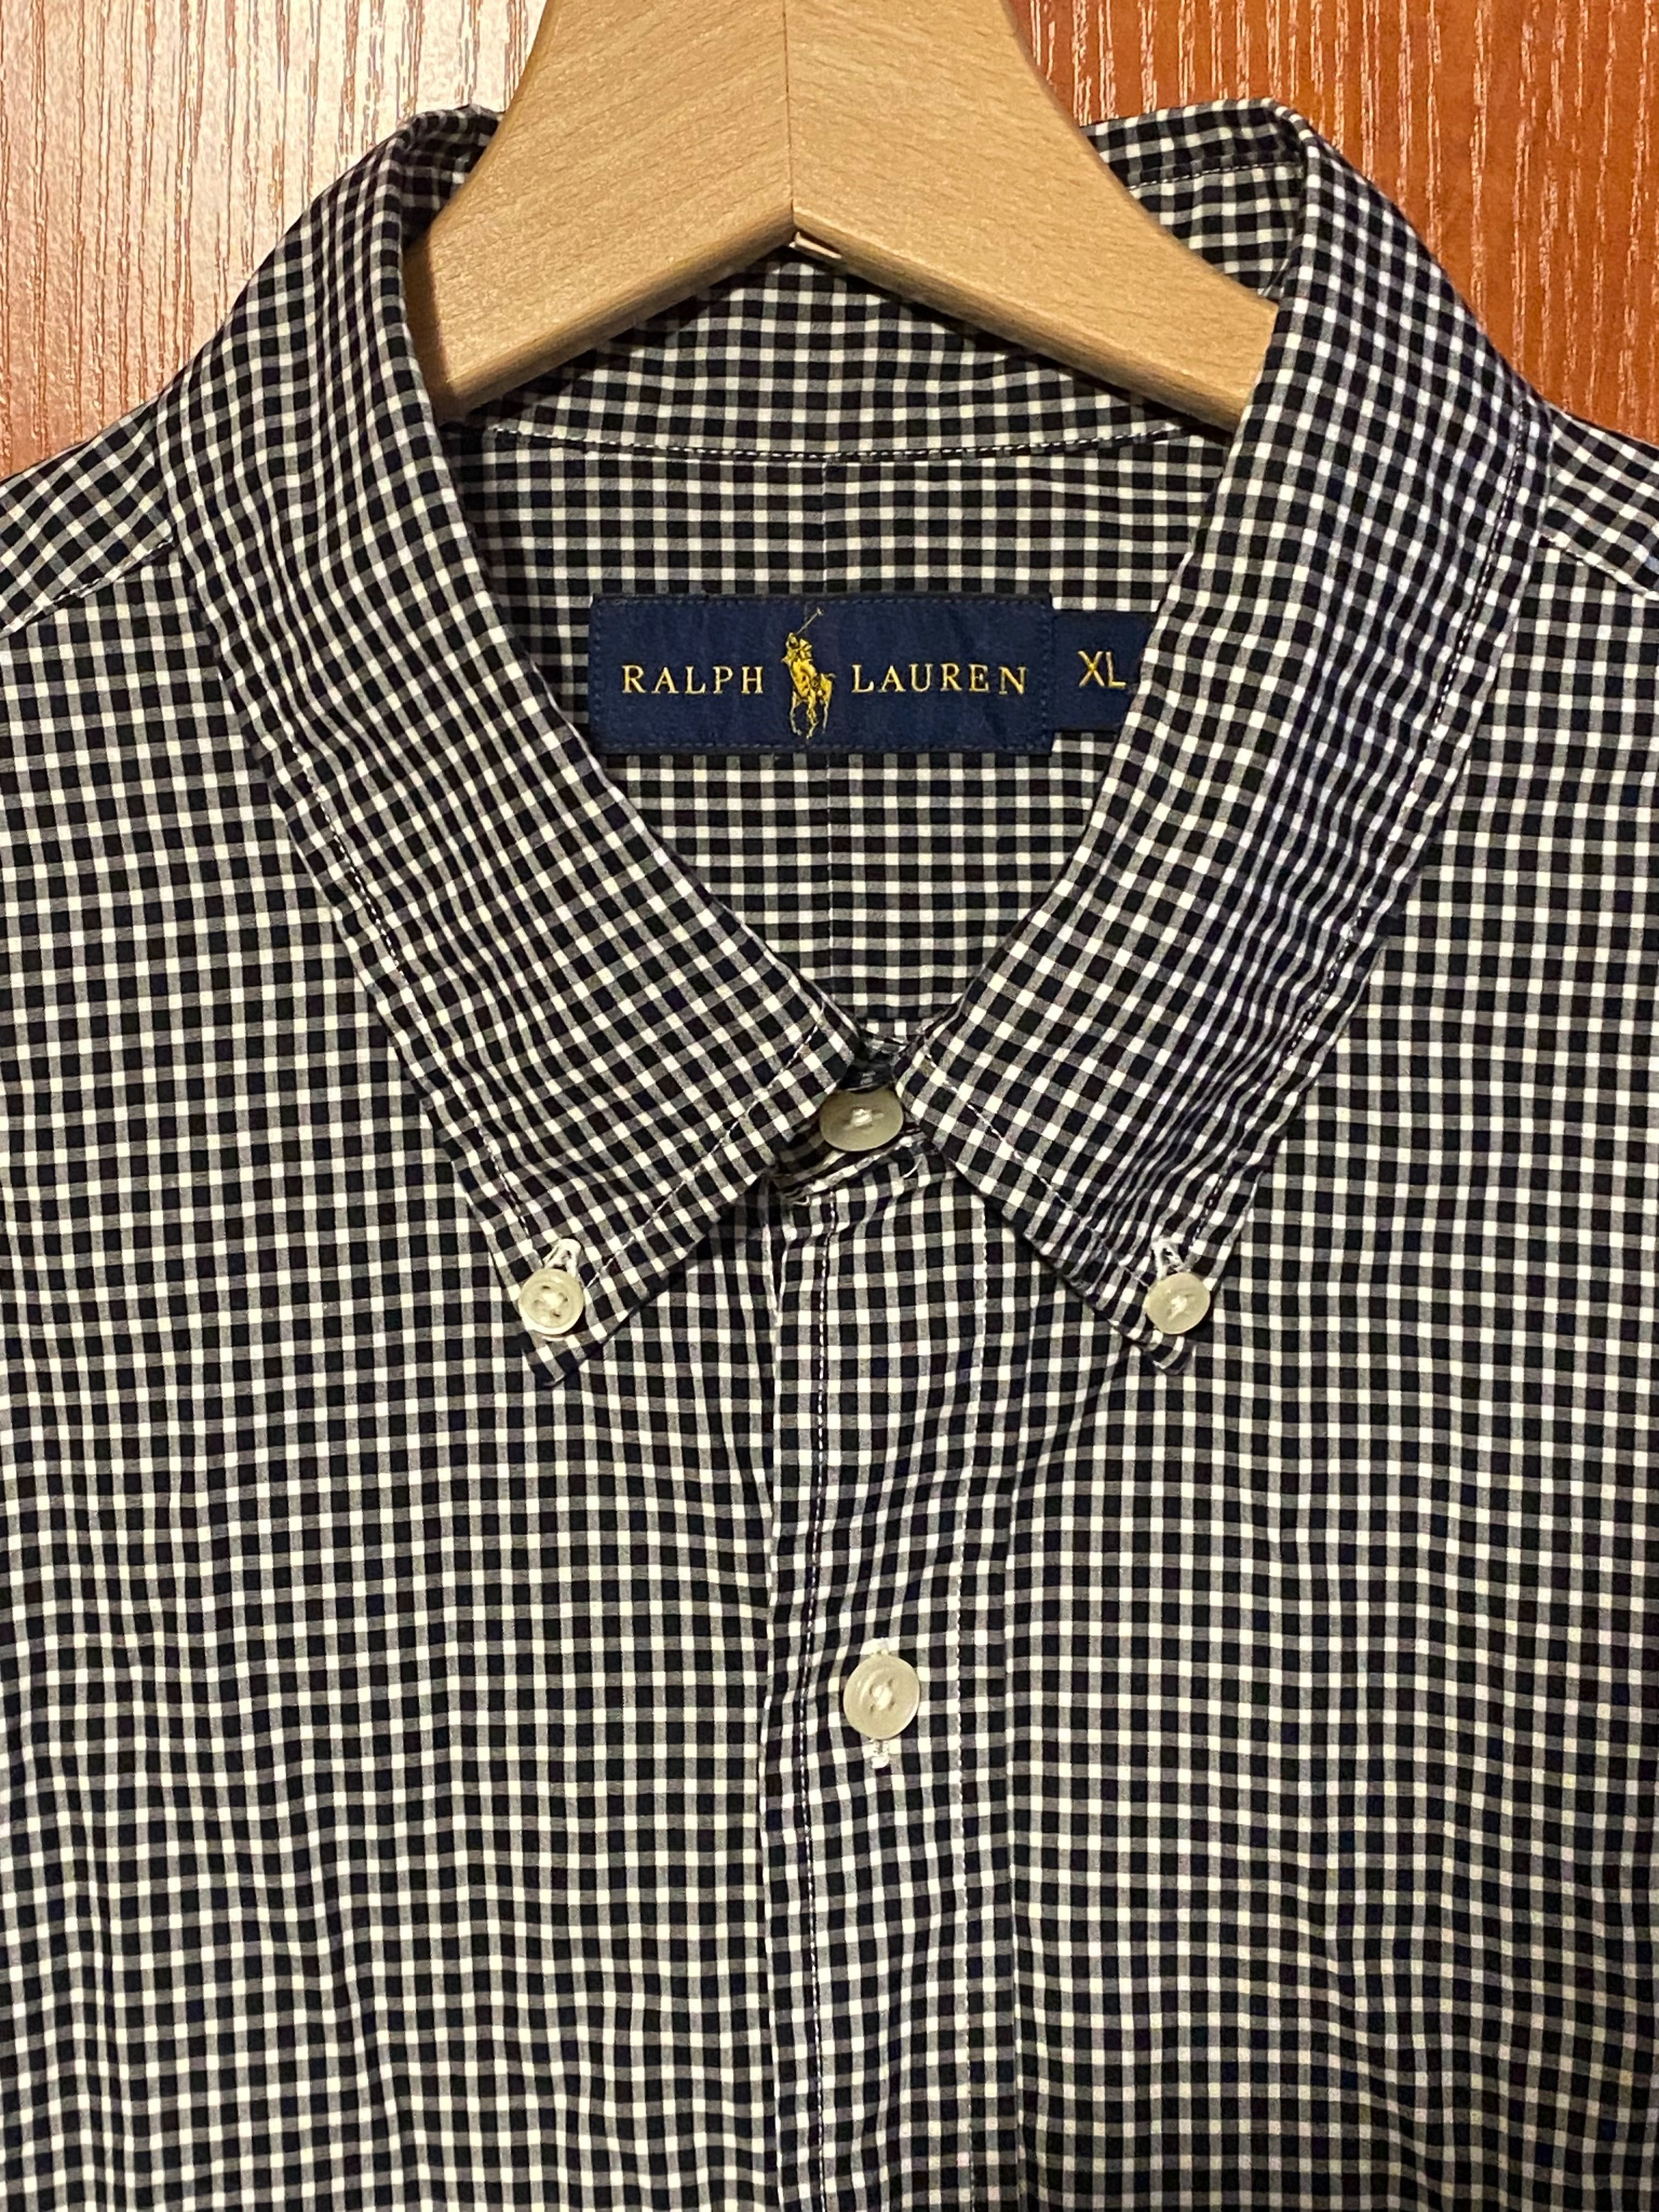 Ralph Lauren koszula XL